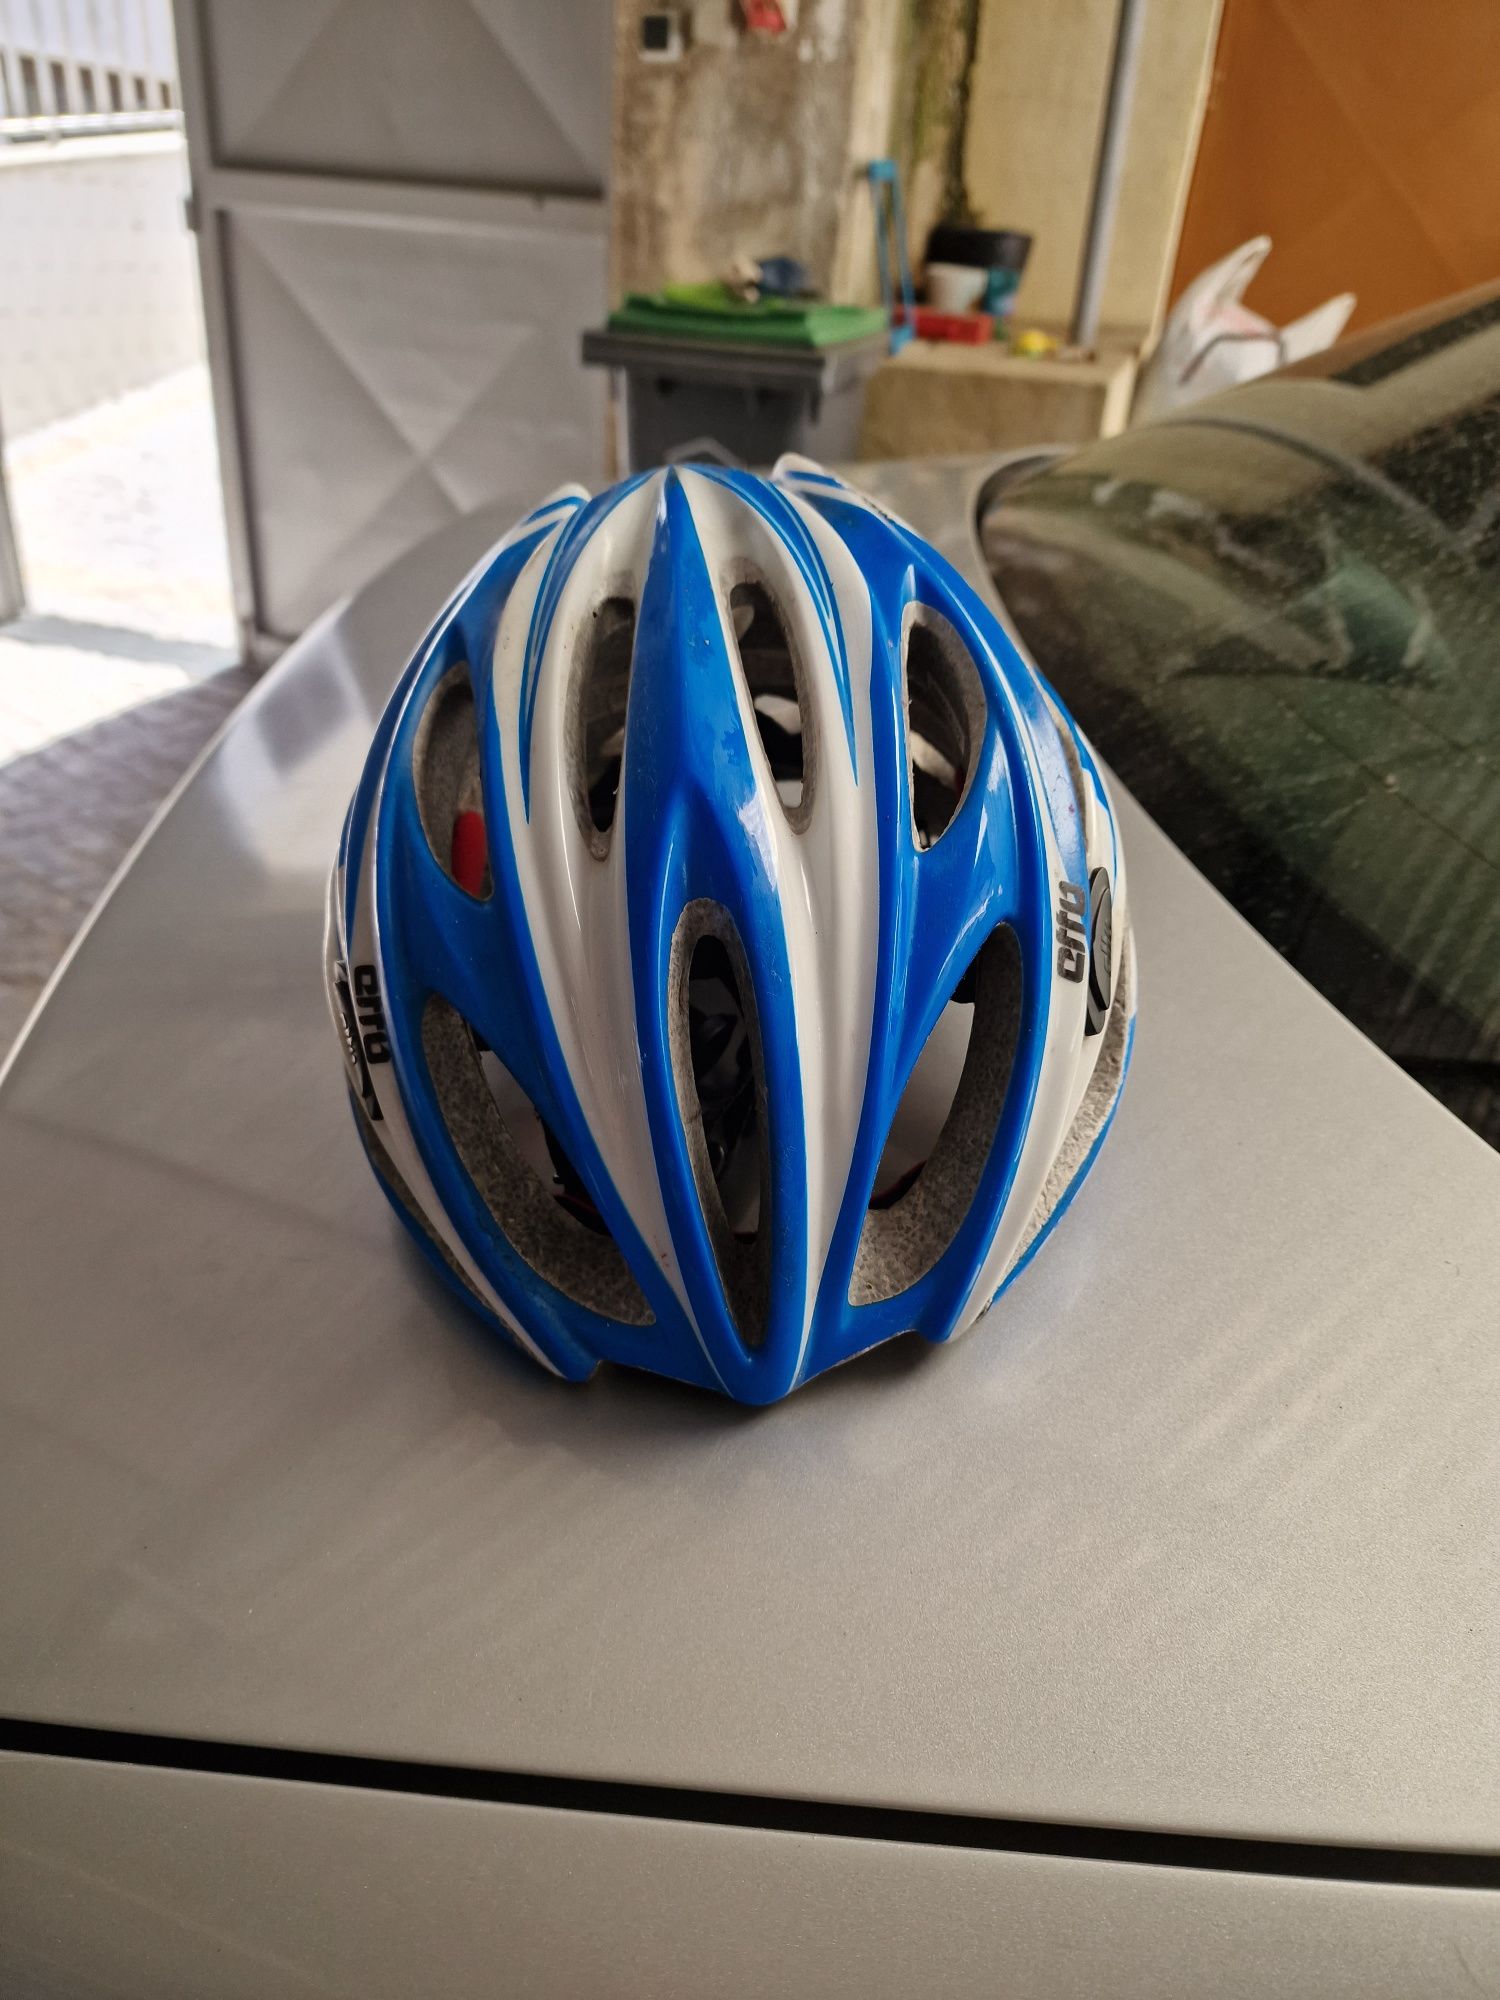 Vendo capacete de bike etto